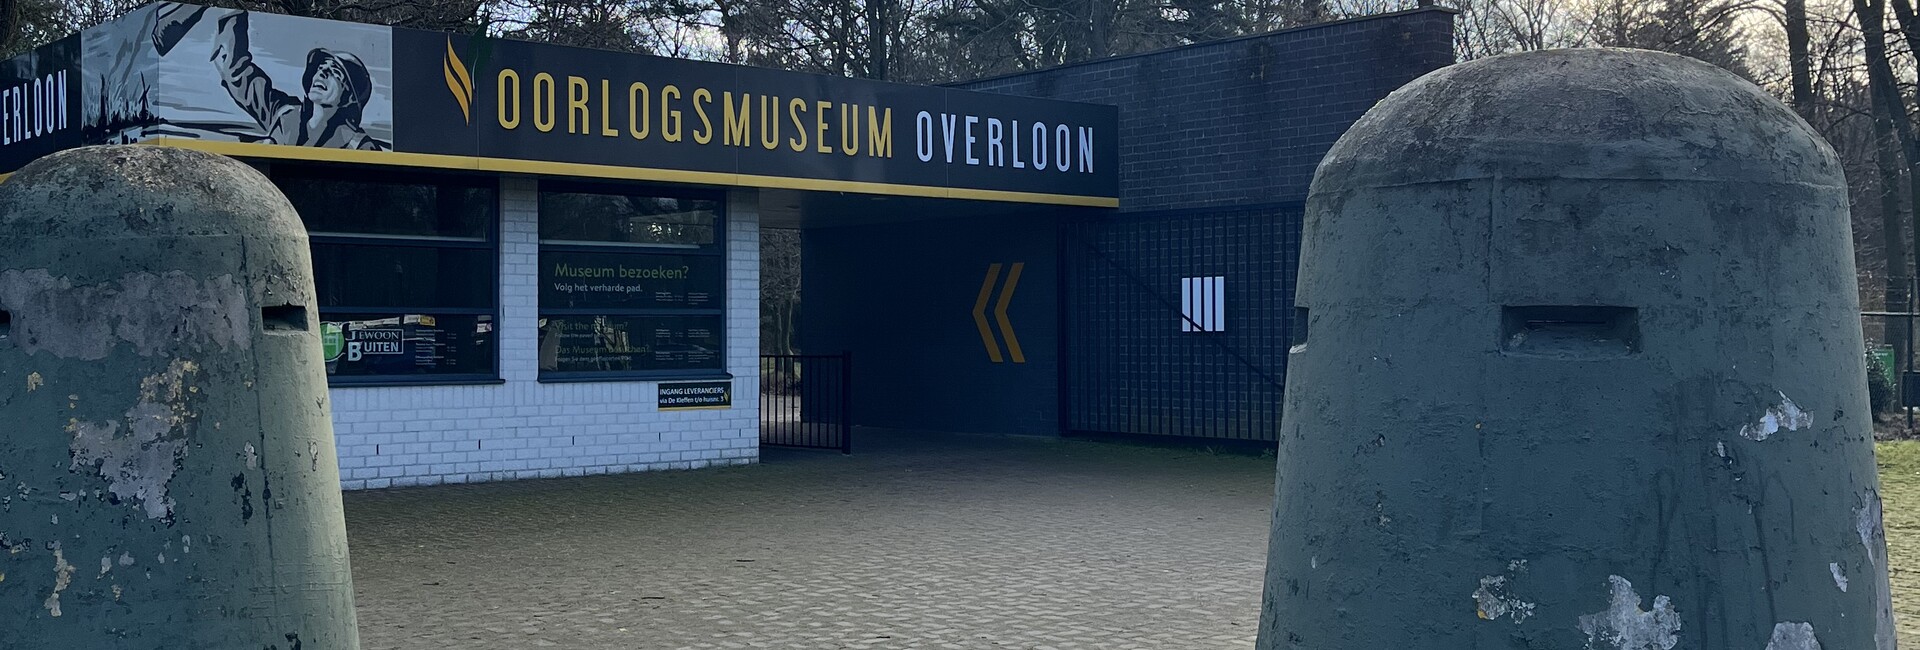 oorlogsmuseum - Öffnungszeiten